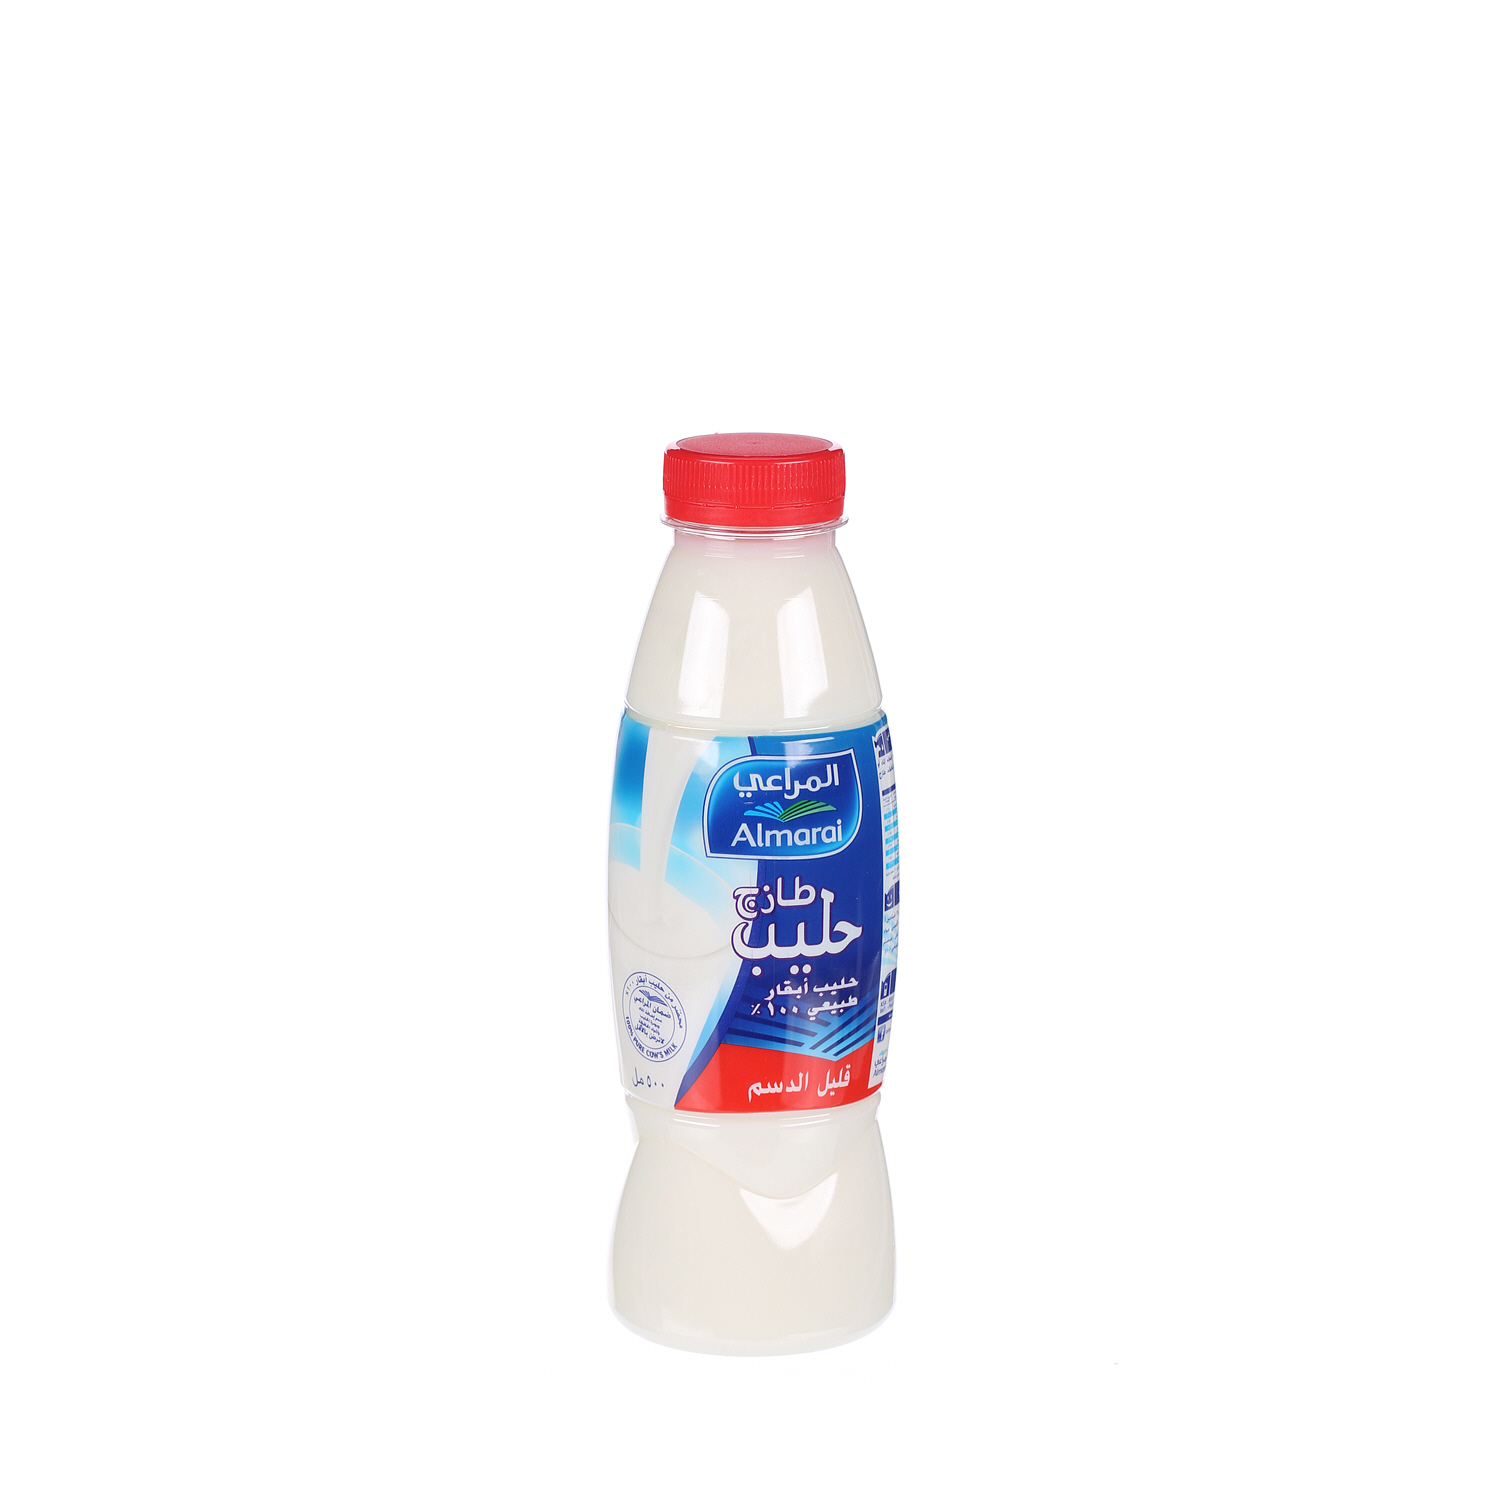 Almarai Fresh Milk Low Fat 500ml